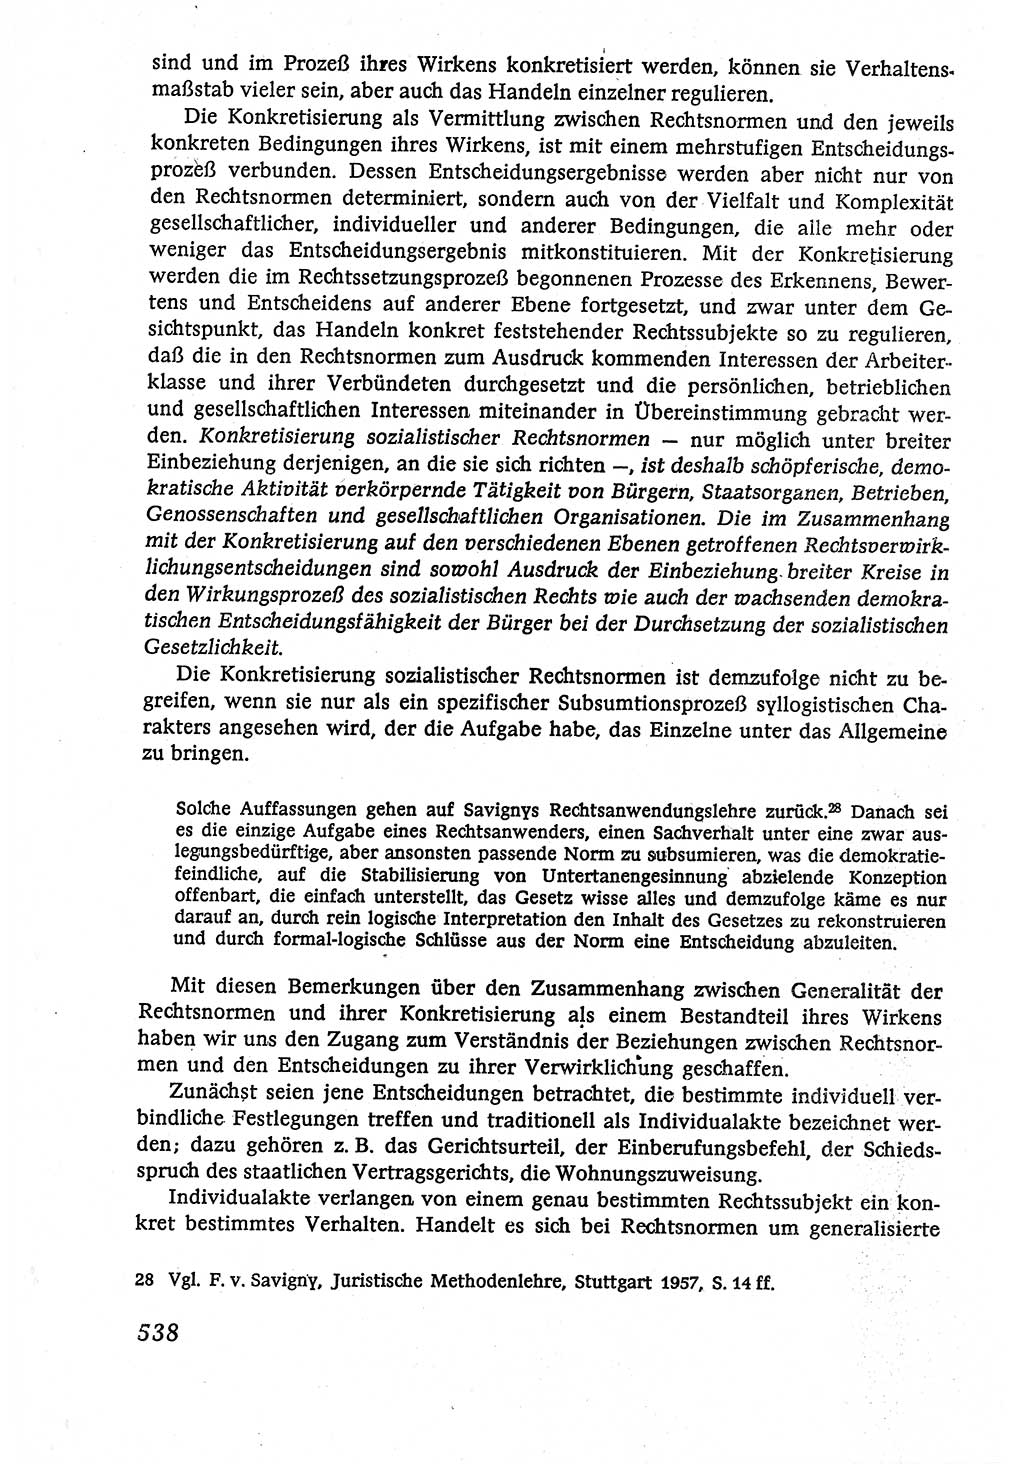 Marxistisch-leninistische (ML) Staats- und Rechtstheorie [Deutsche Demokratische Republik (DDR)], Lehrbuch 1980, Seite 538 (ML St.-R.-Th. DDR Lb. 1980, S. 538)